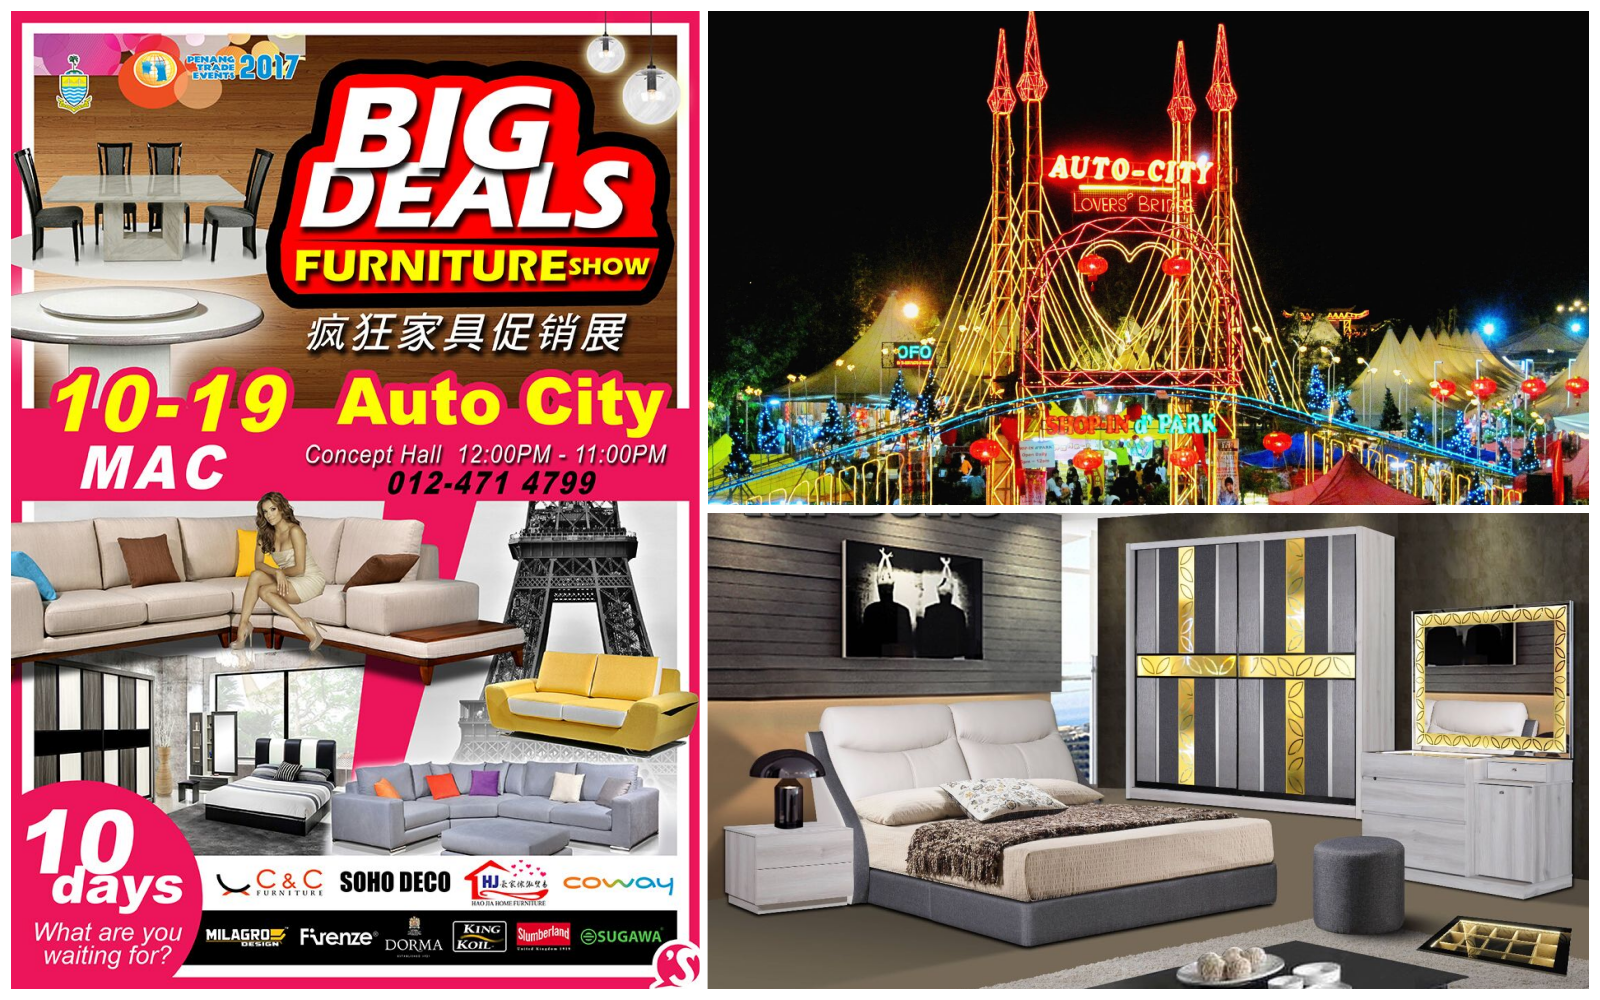 Big Deals Furniture Fair 2017